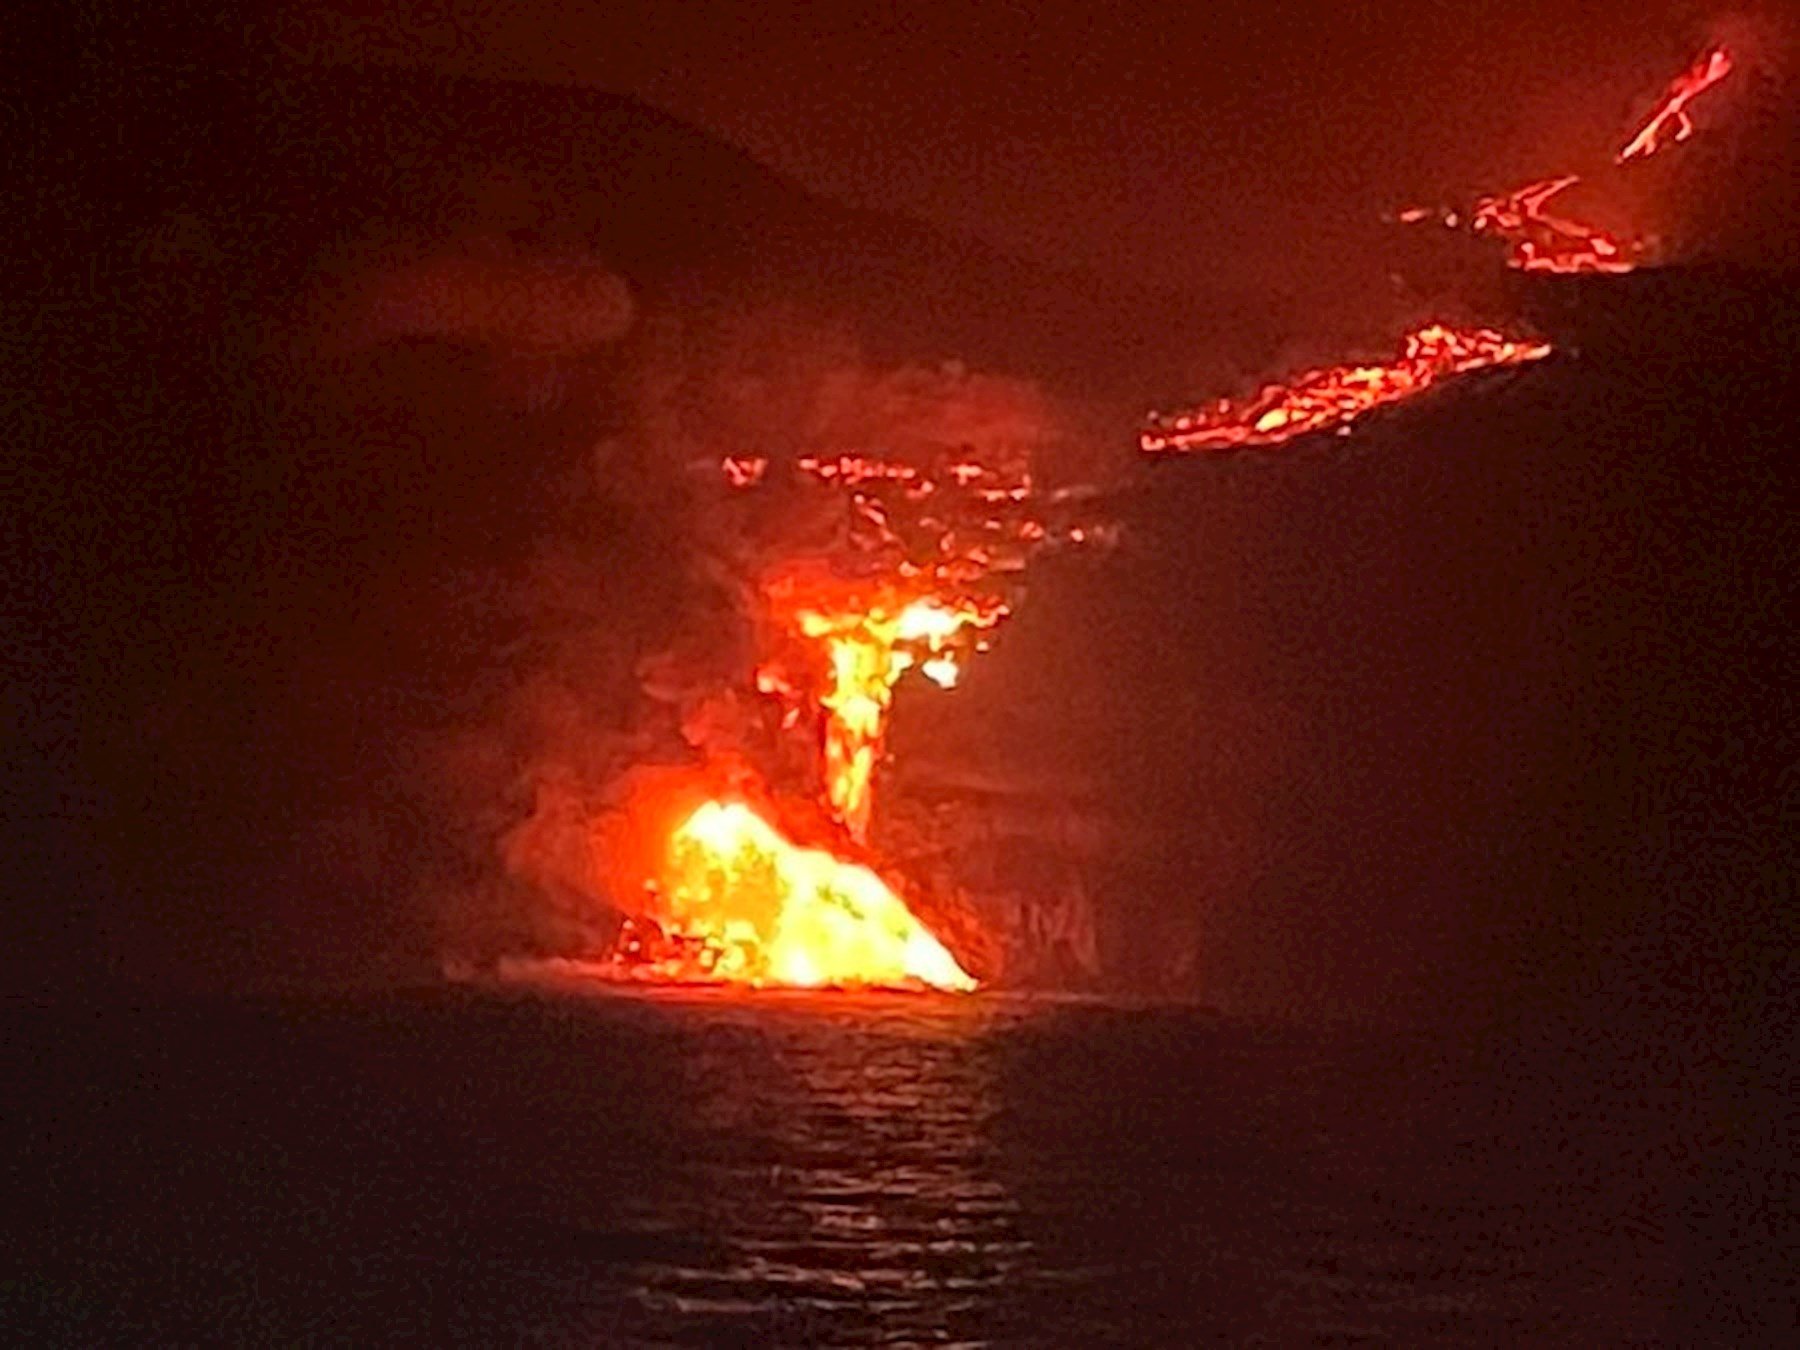 Les primeres imatges de l'arribada de la lava al mar